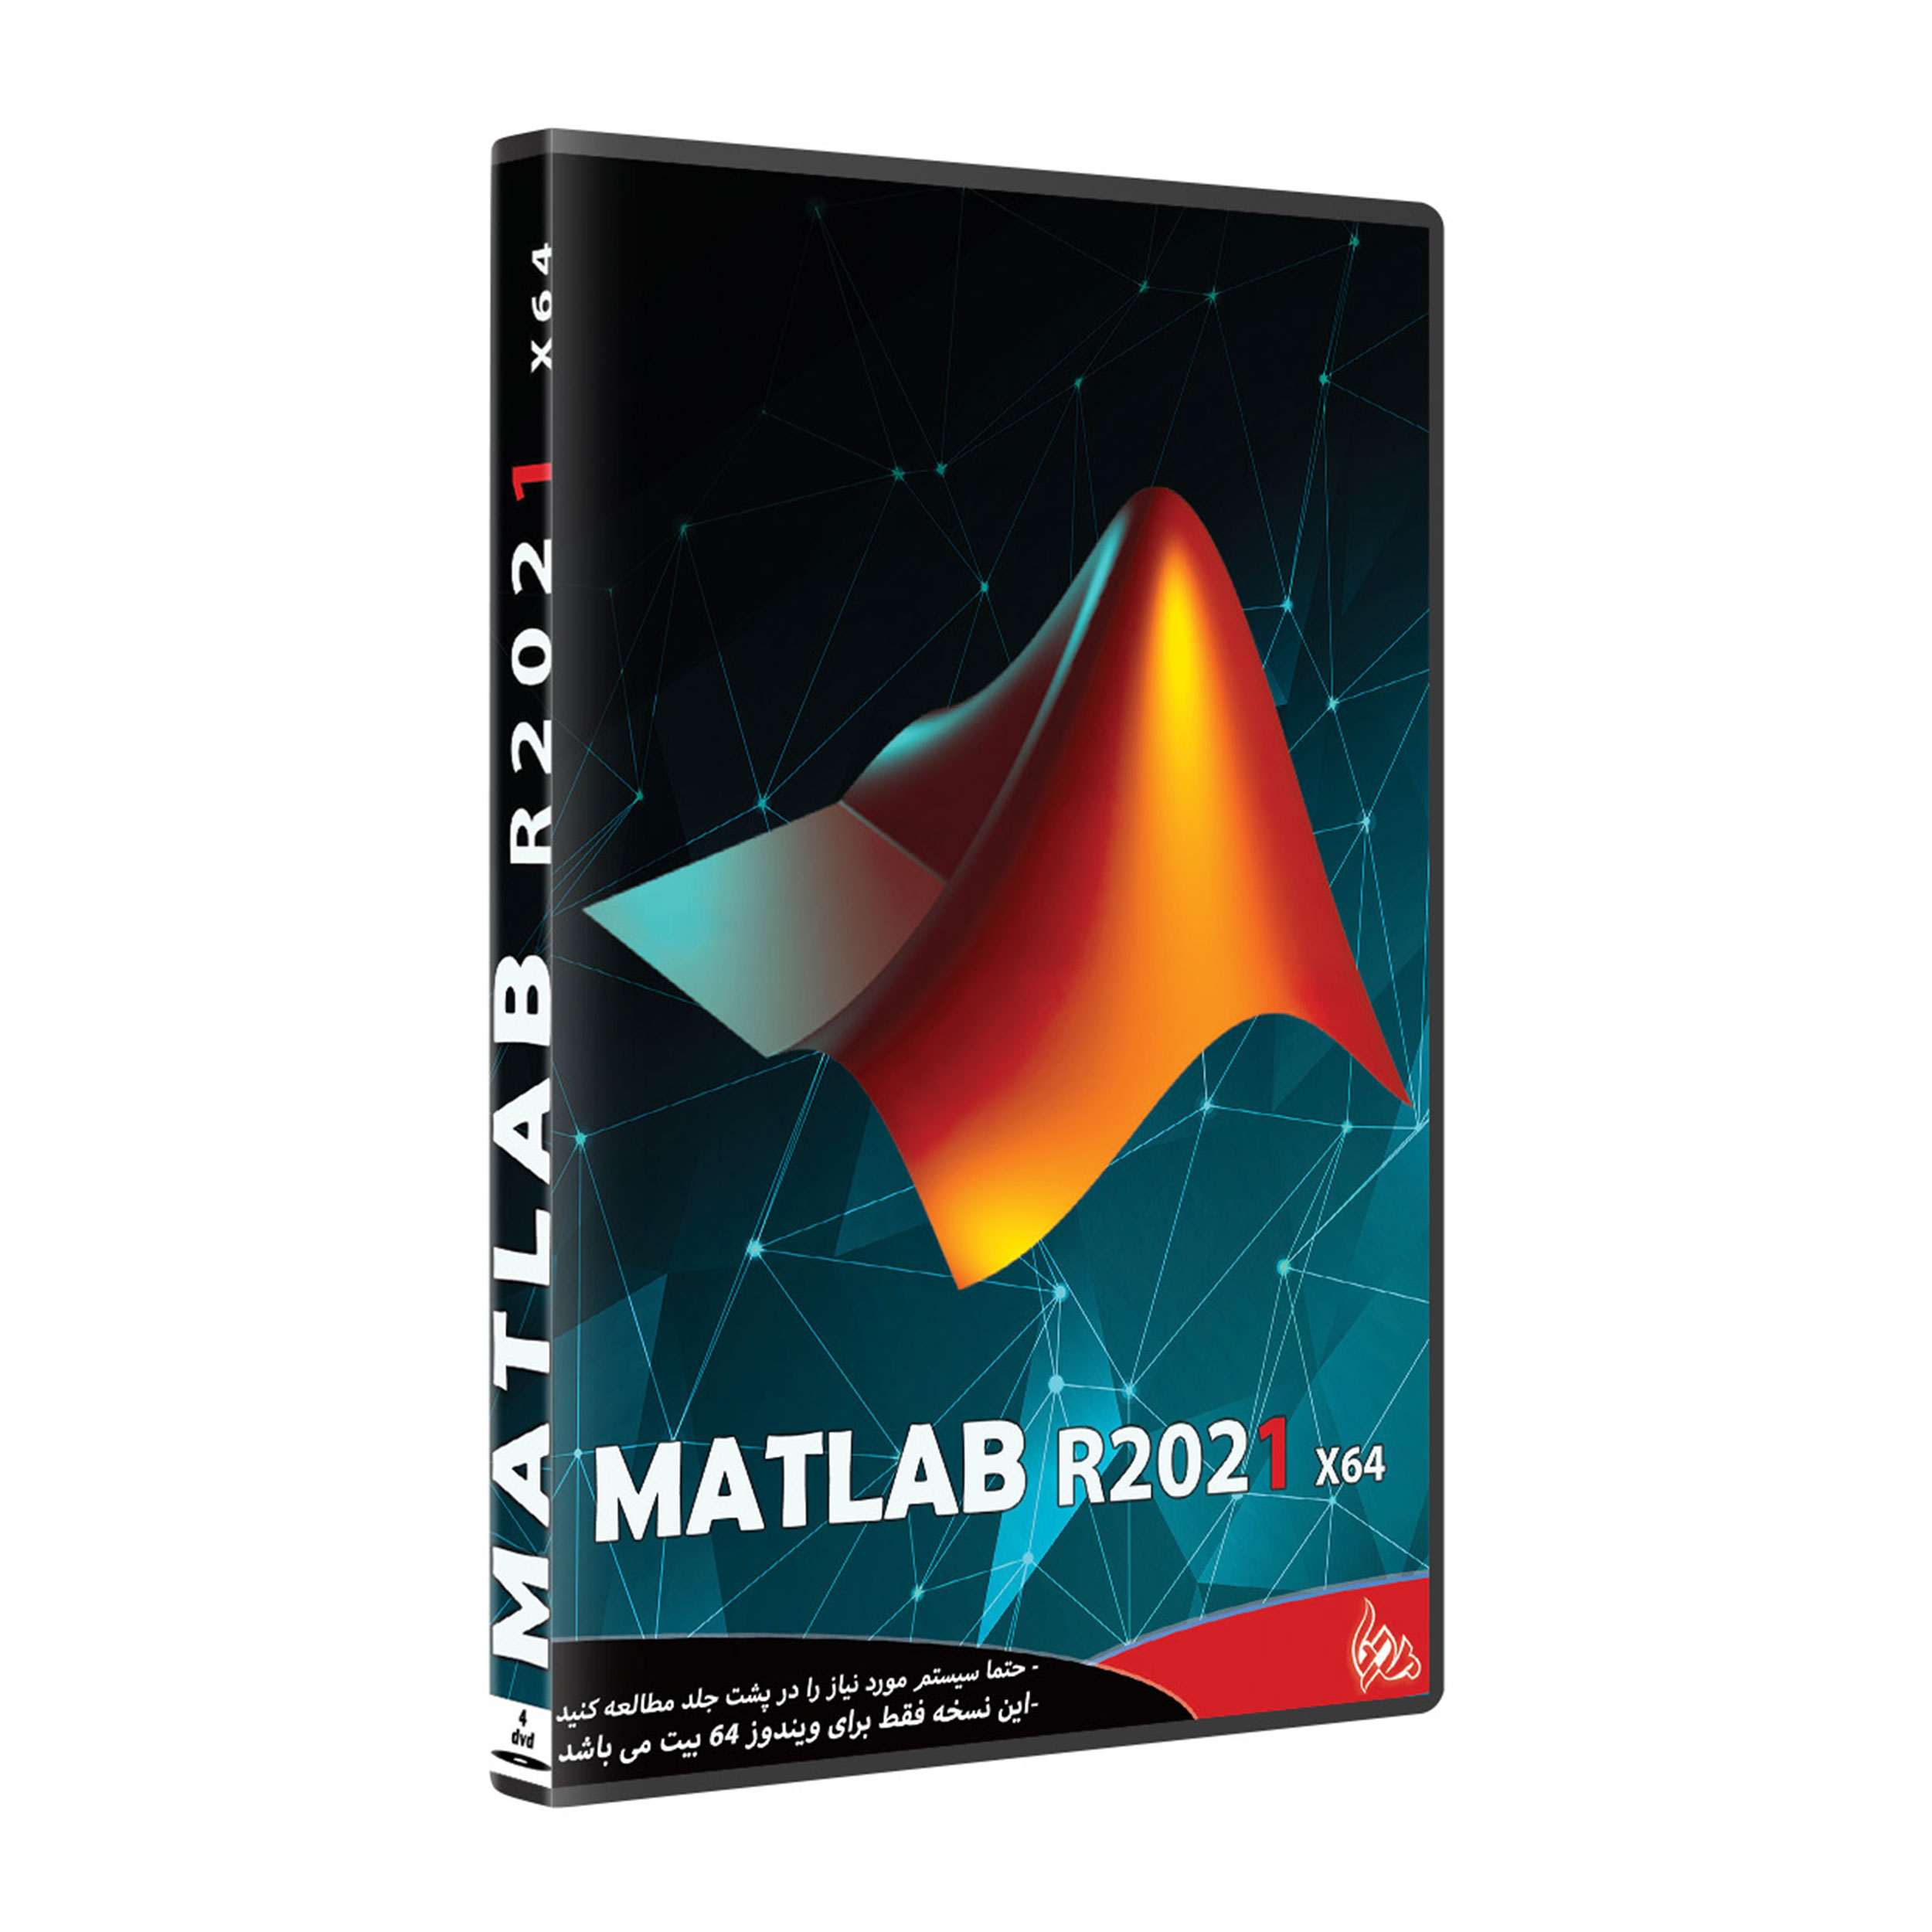 نرم افزار MATLAB R 2021 نشر پدیا